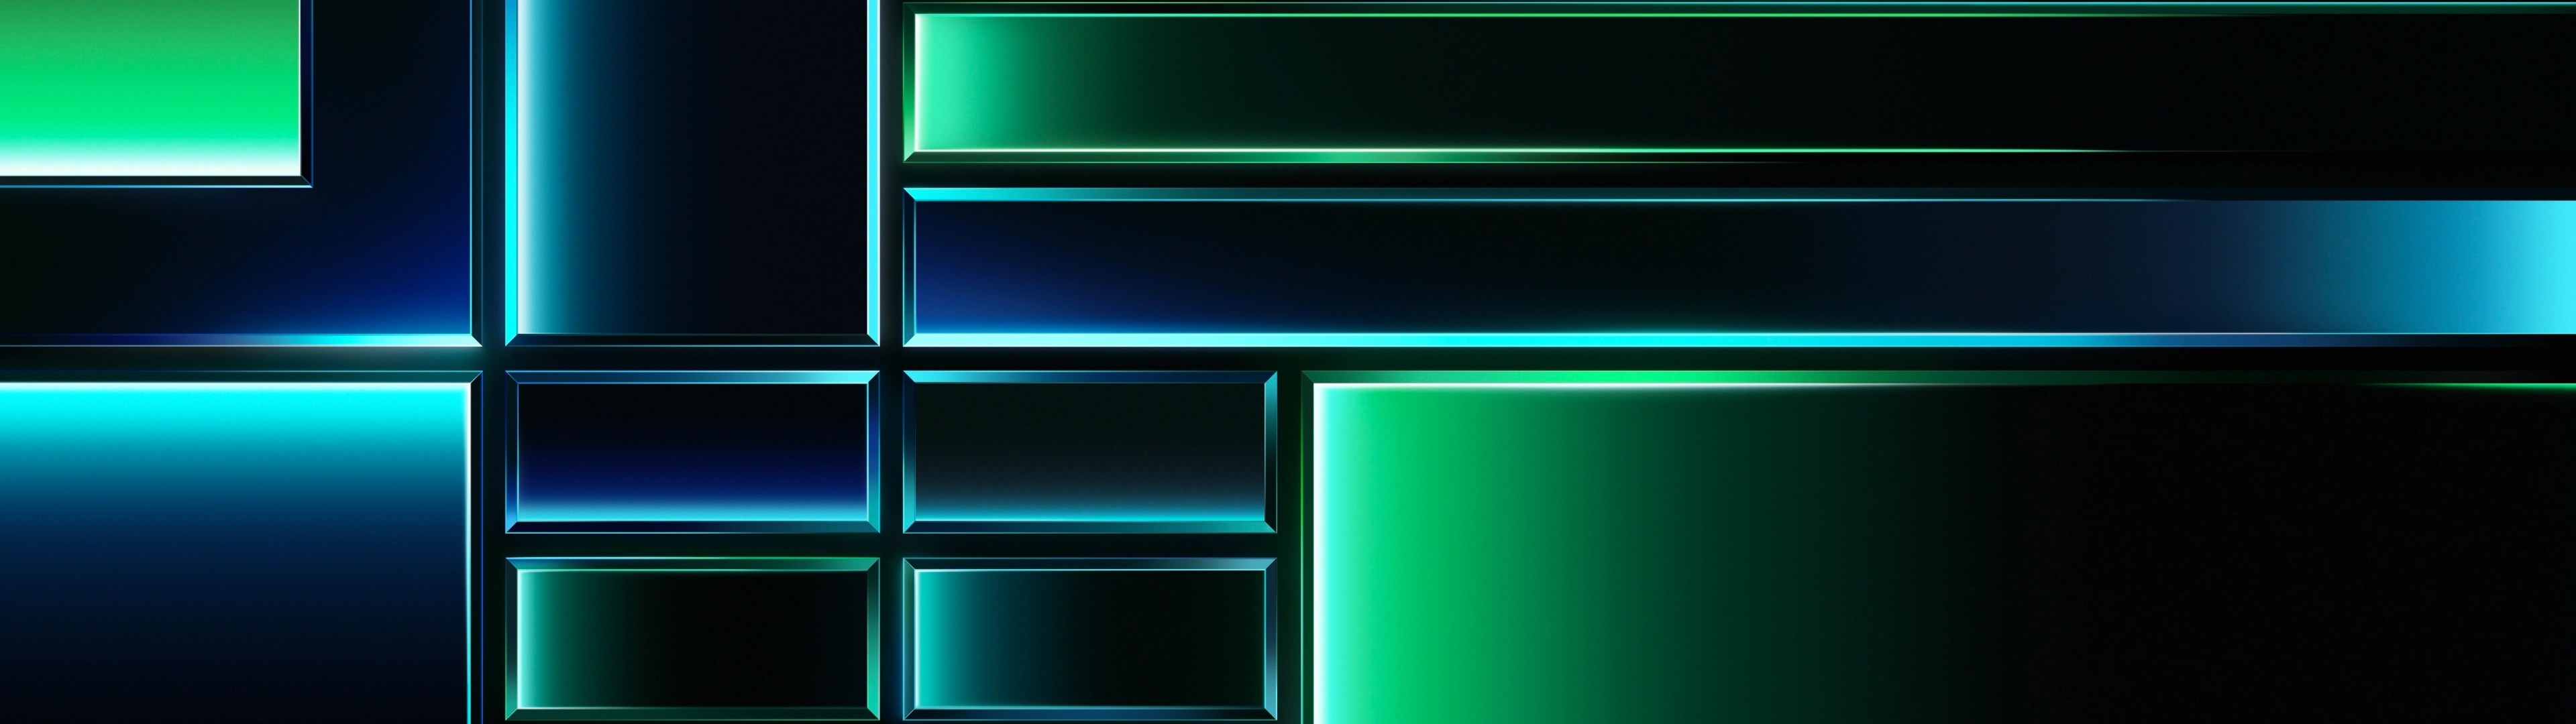 Grid Wallpaper 4K, Dark theme, Green background